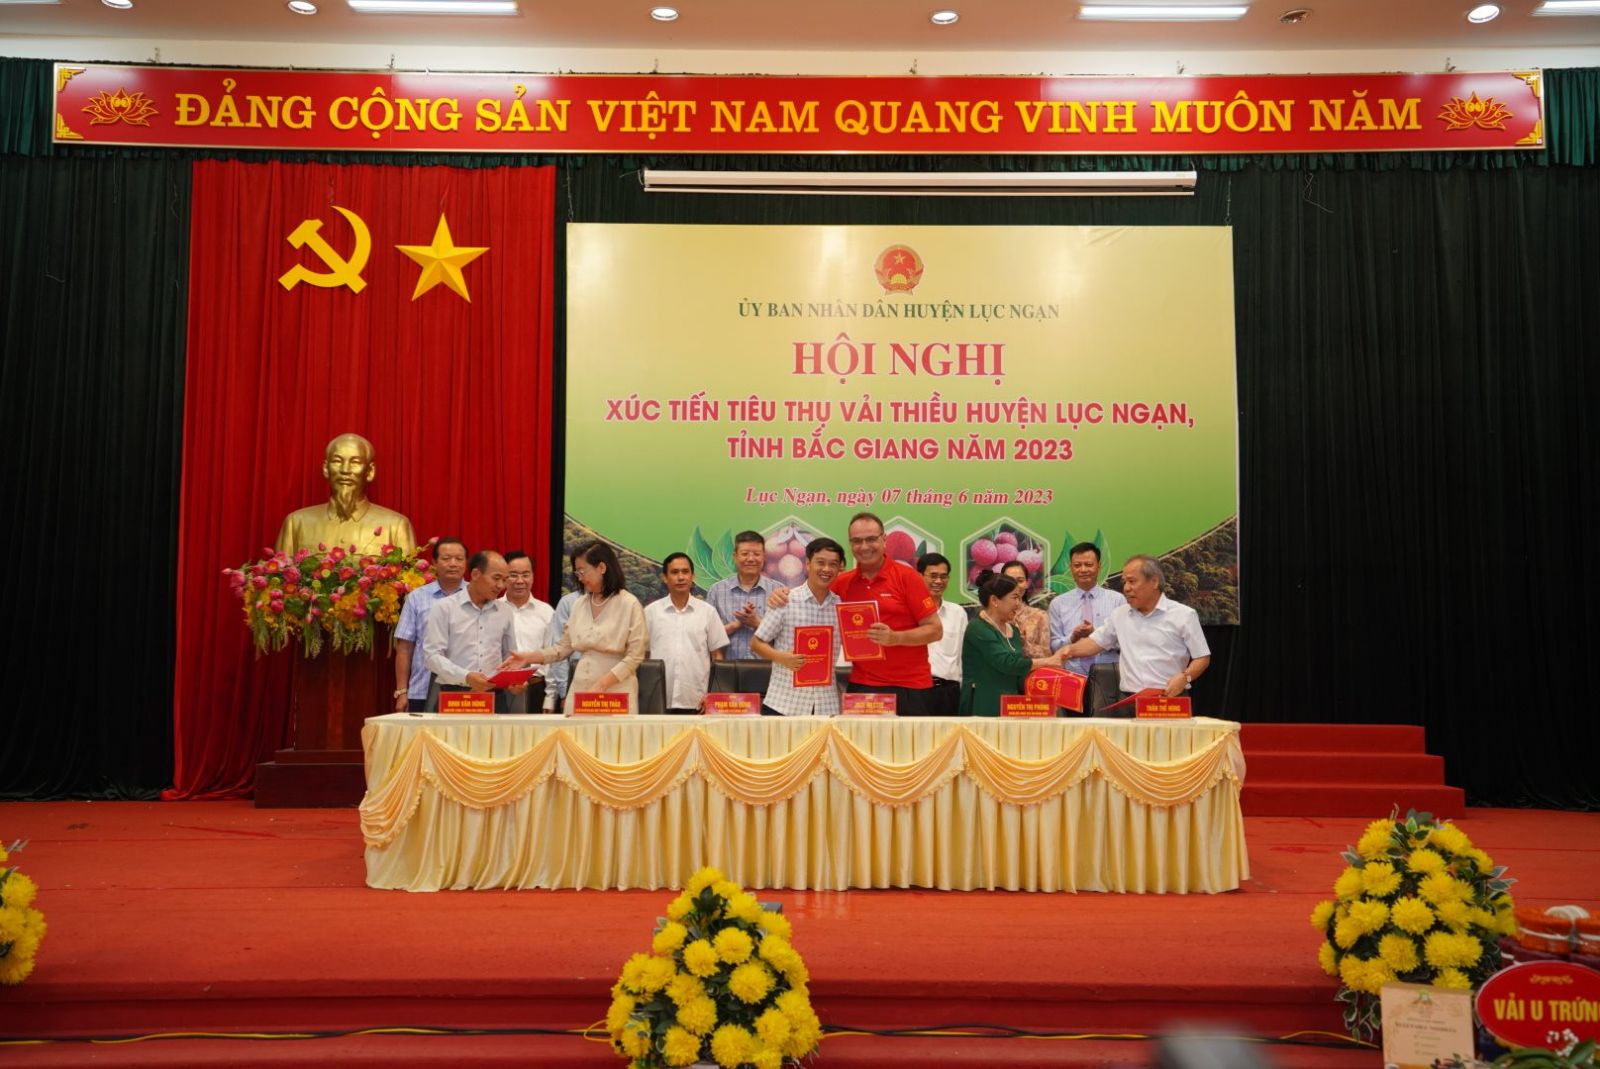  tiếp nối Thỏa thuận hợp tác đã được ký kết giữa Tập đoàn Central Retail Việt Nam và UBND tỉnh Bắc Giang về tiêu thụ vải thiều mùa vụ 2023